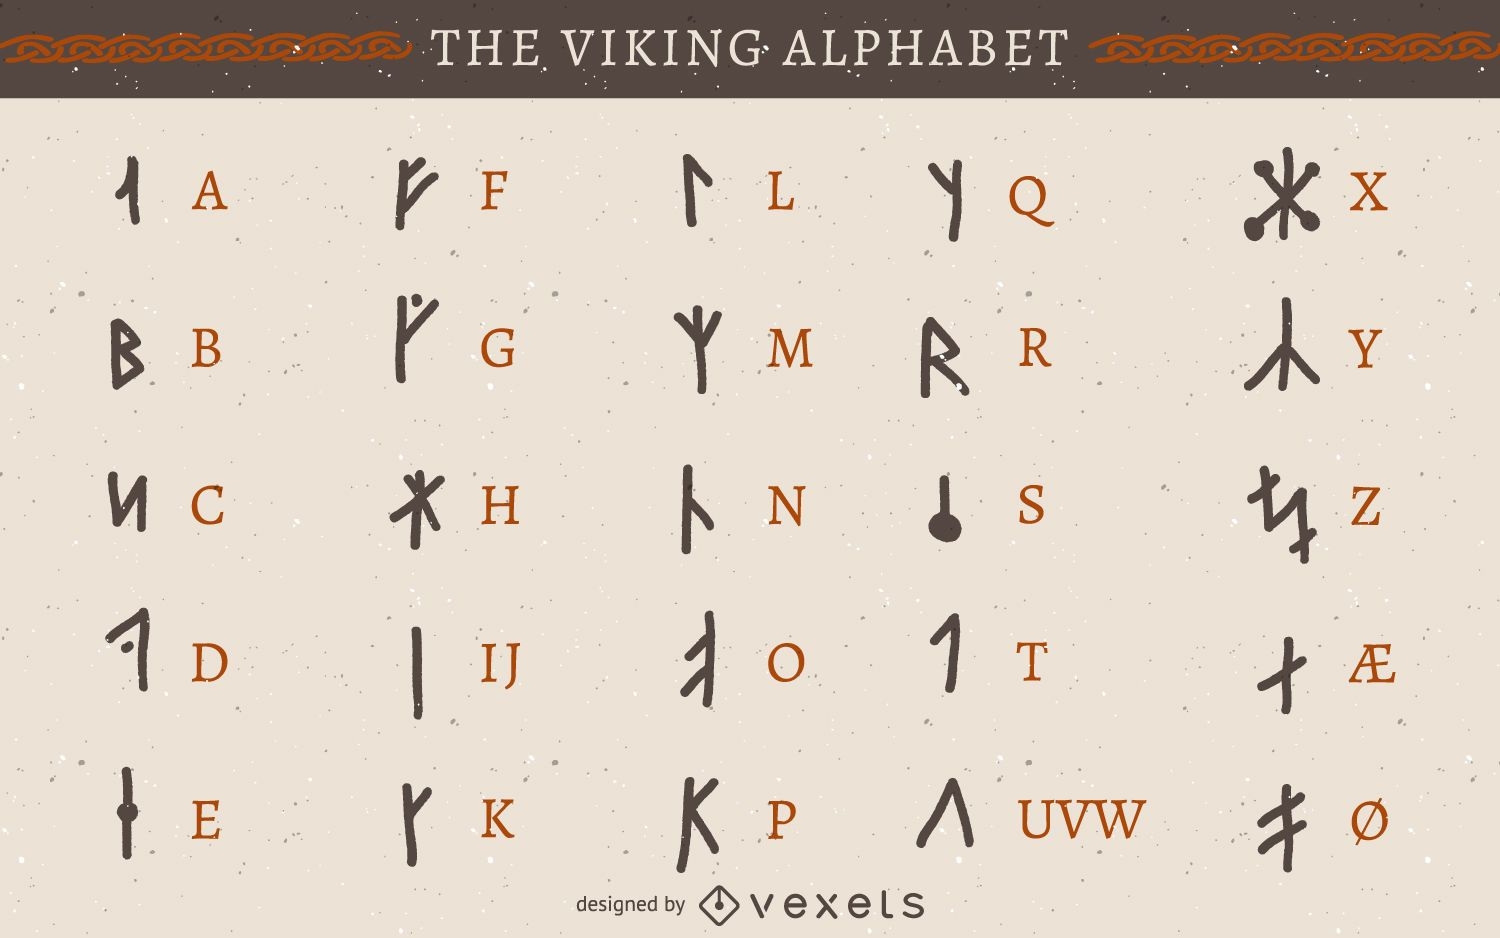 Viking rune alphabet